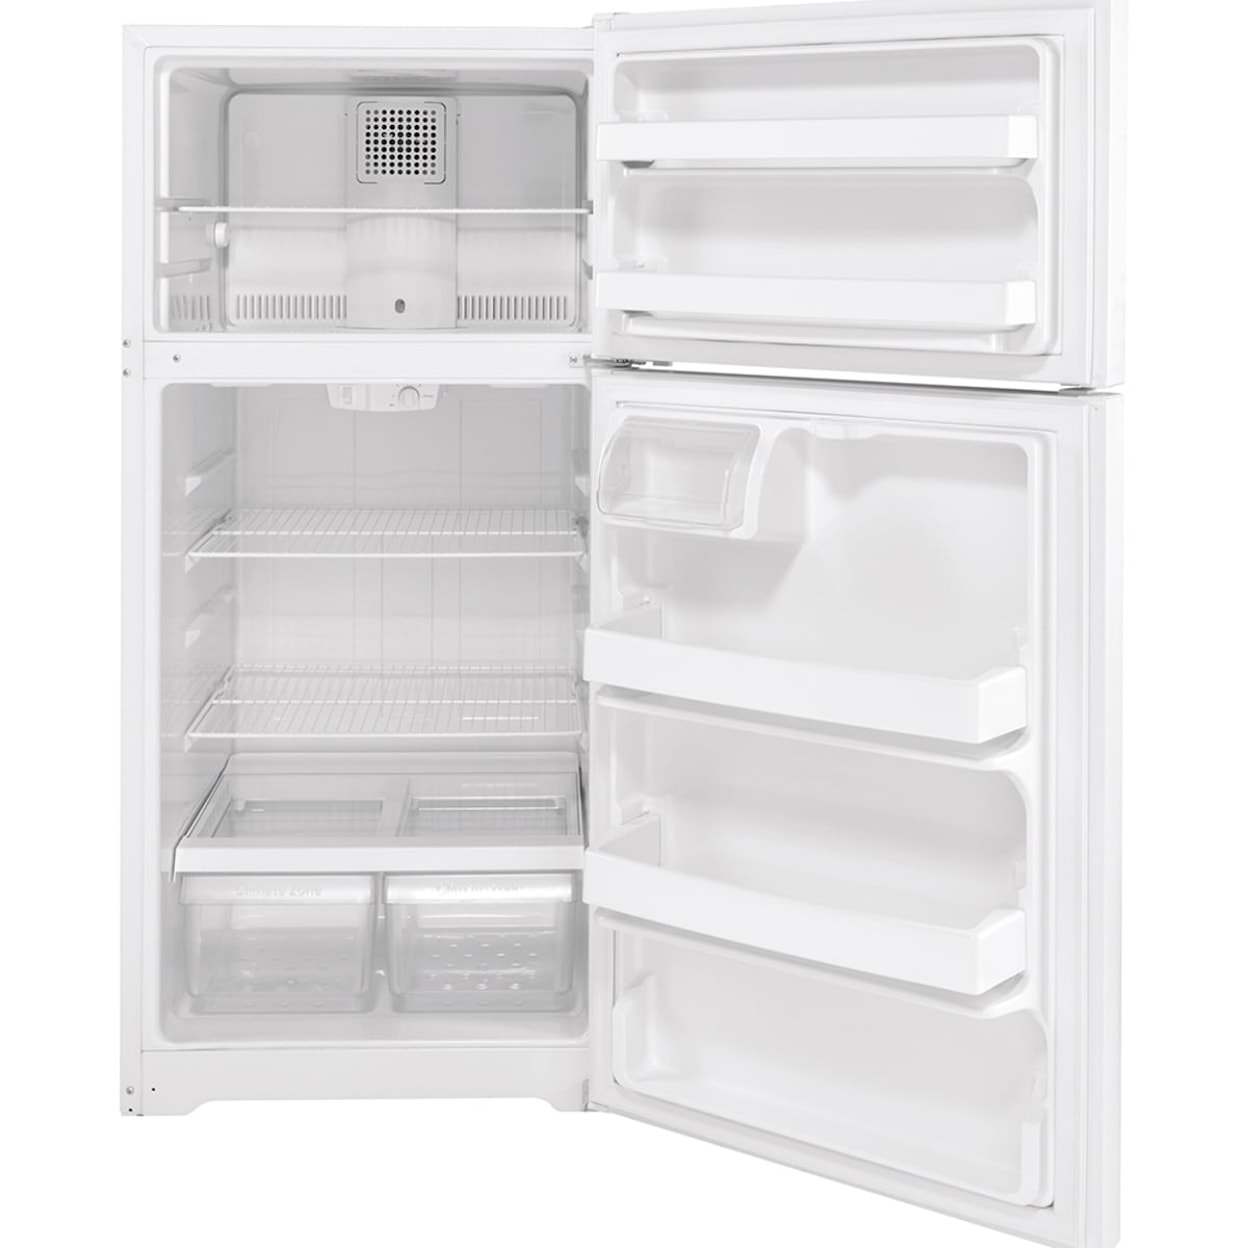 GE Appliances Refridgerators Top Freezer Freestanding Refrigerator